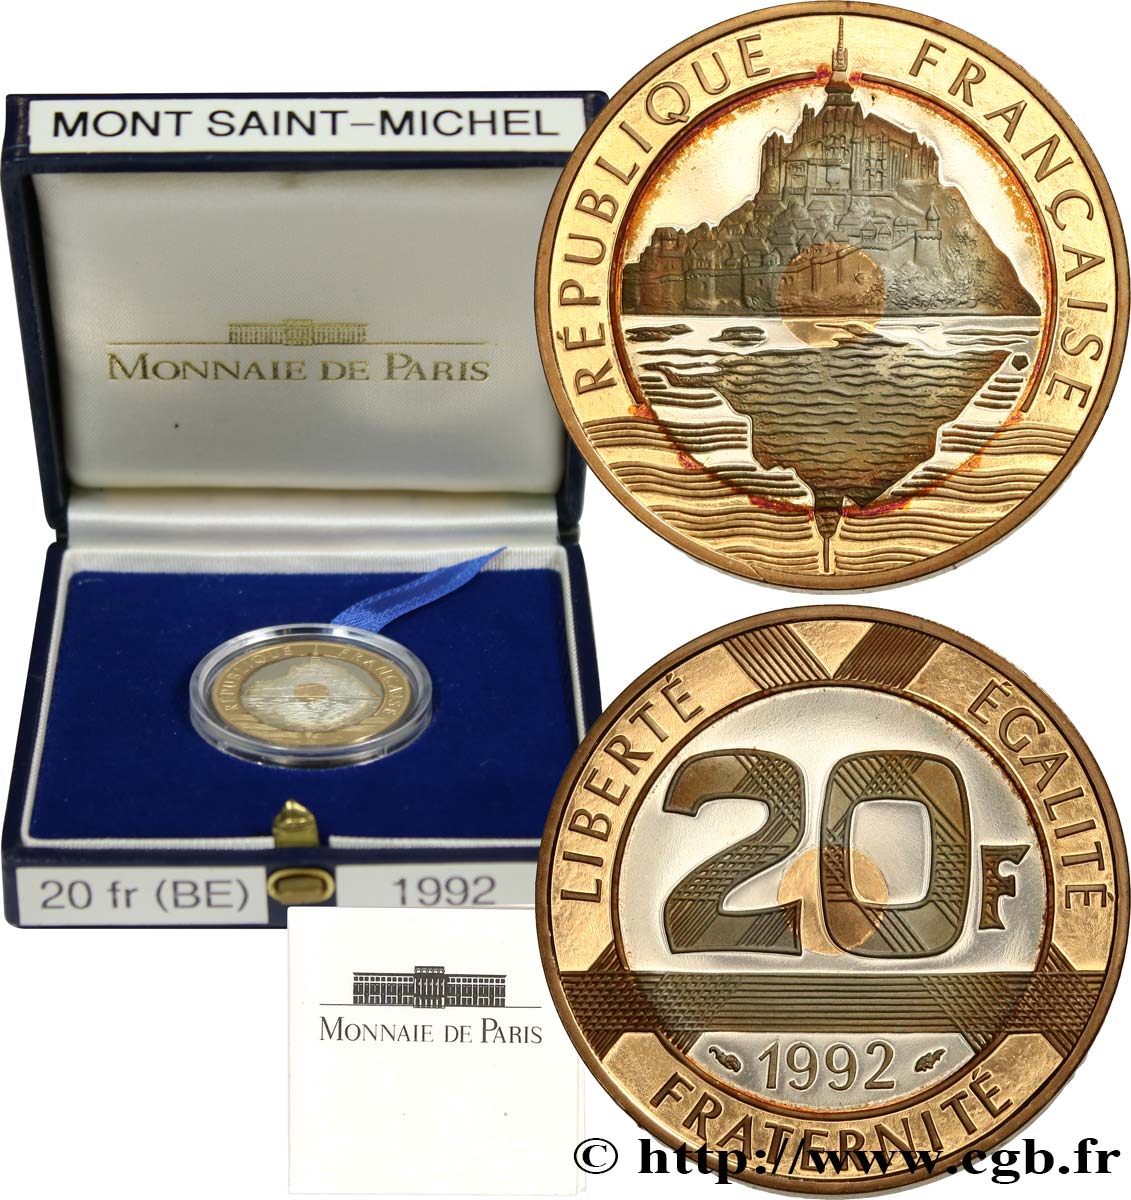 Belle Épreuve Or/Argent 20 francs - Mont Saint-Michel 1992 Pessac F5.1400 2 ST 